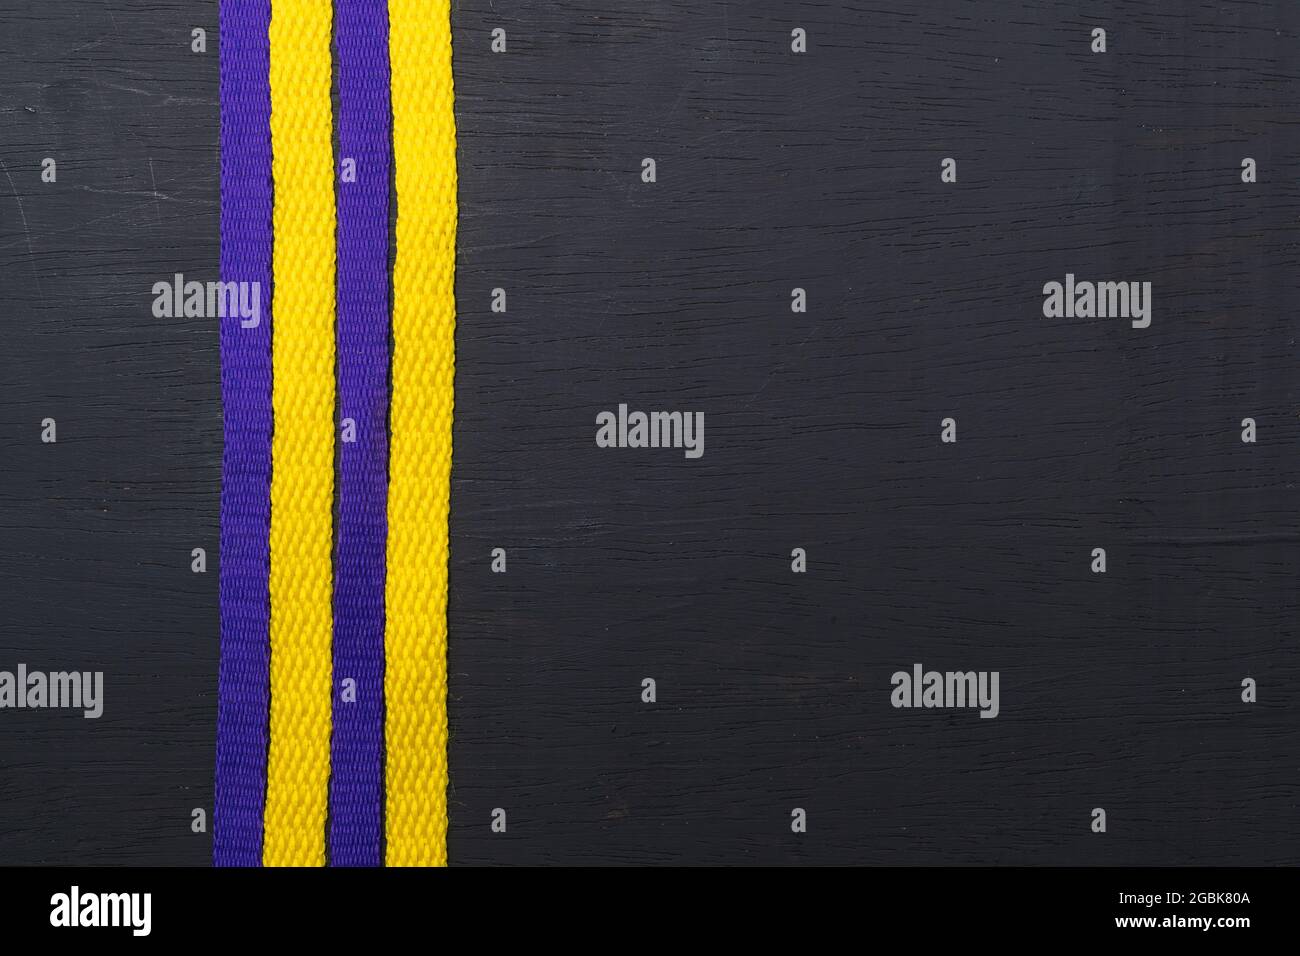 lacets jaunes et violets, drapeau lakers, sur fond noir en bois, laissant de l'espace pour le texte publicitaire Banque D'Images